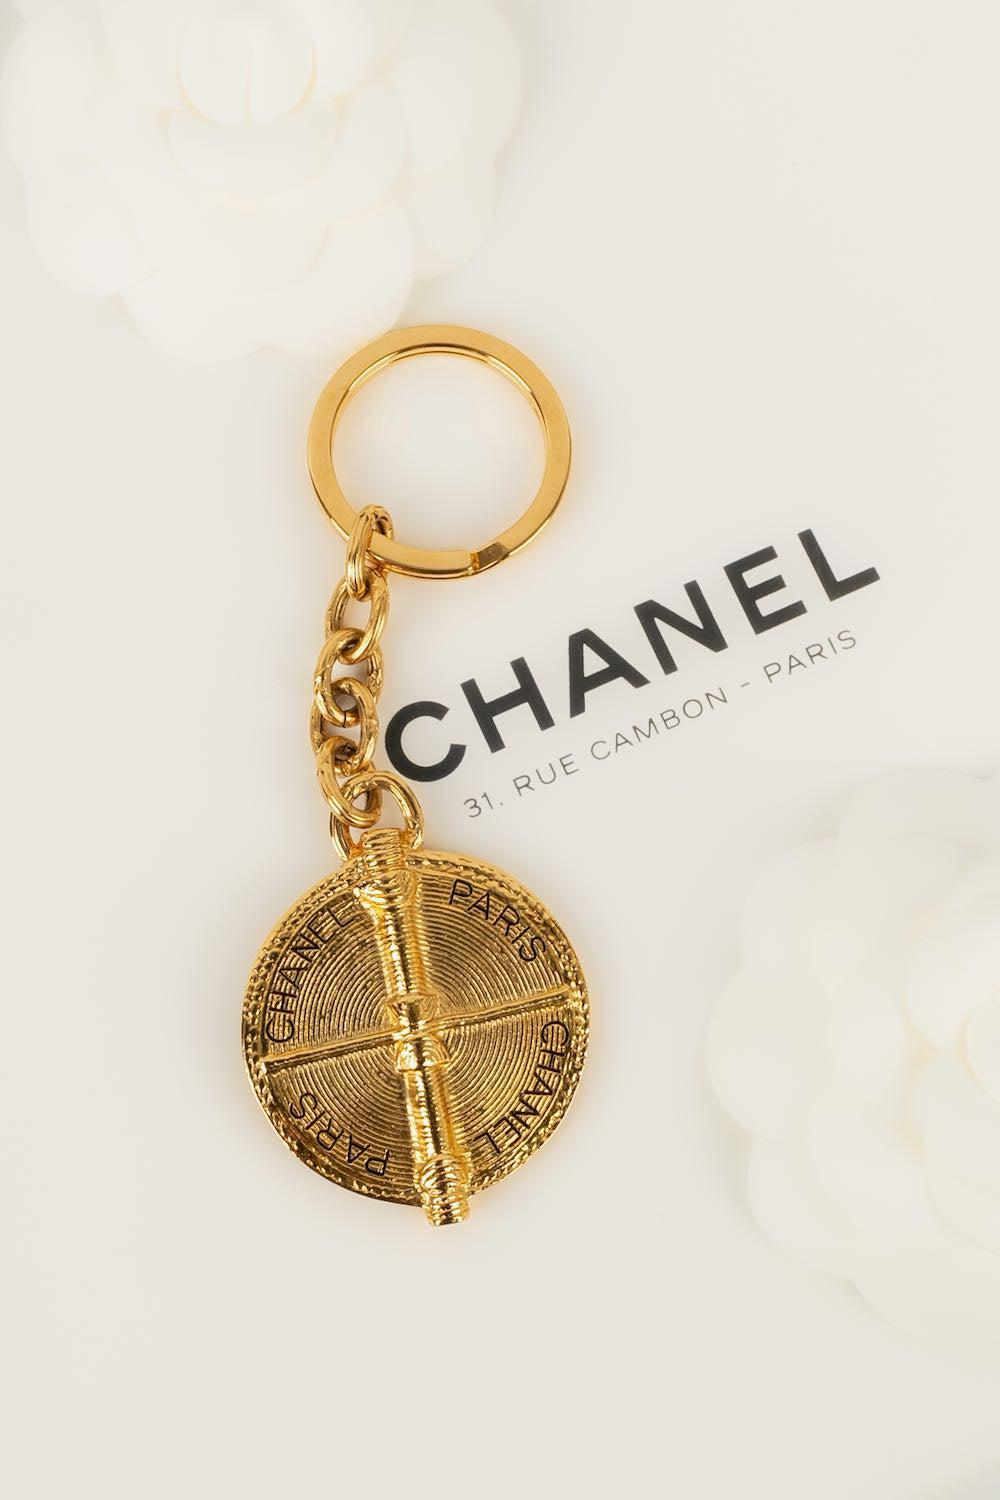 Chanel - (Made in France) Schlüsselanhänger aus goldenem Metall. Herbst/Winter 1996 Kollektion.

Zusätzliche Informationen: 

Abmessungen: 
Höhe: 12 cm

Bedingung: 
Sehr guter Zustand
Verkäufer Ref Nummer: BRB151